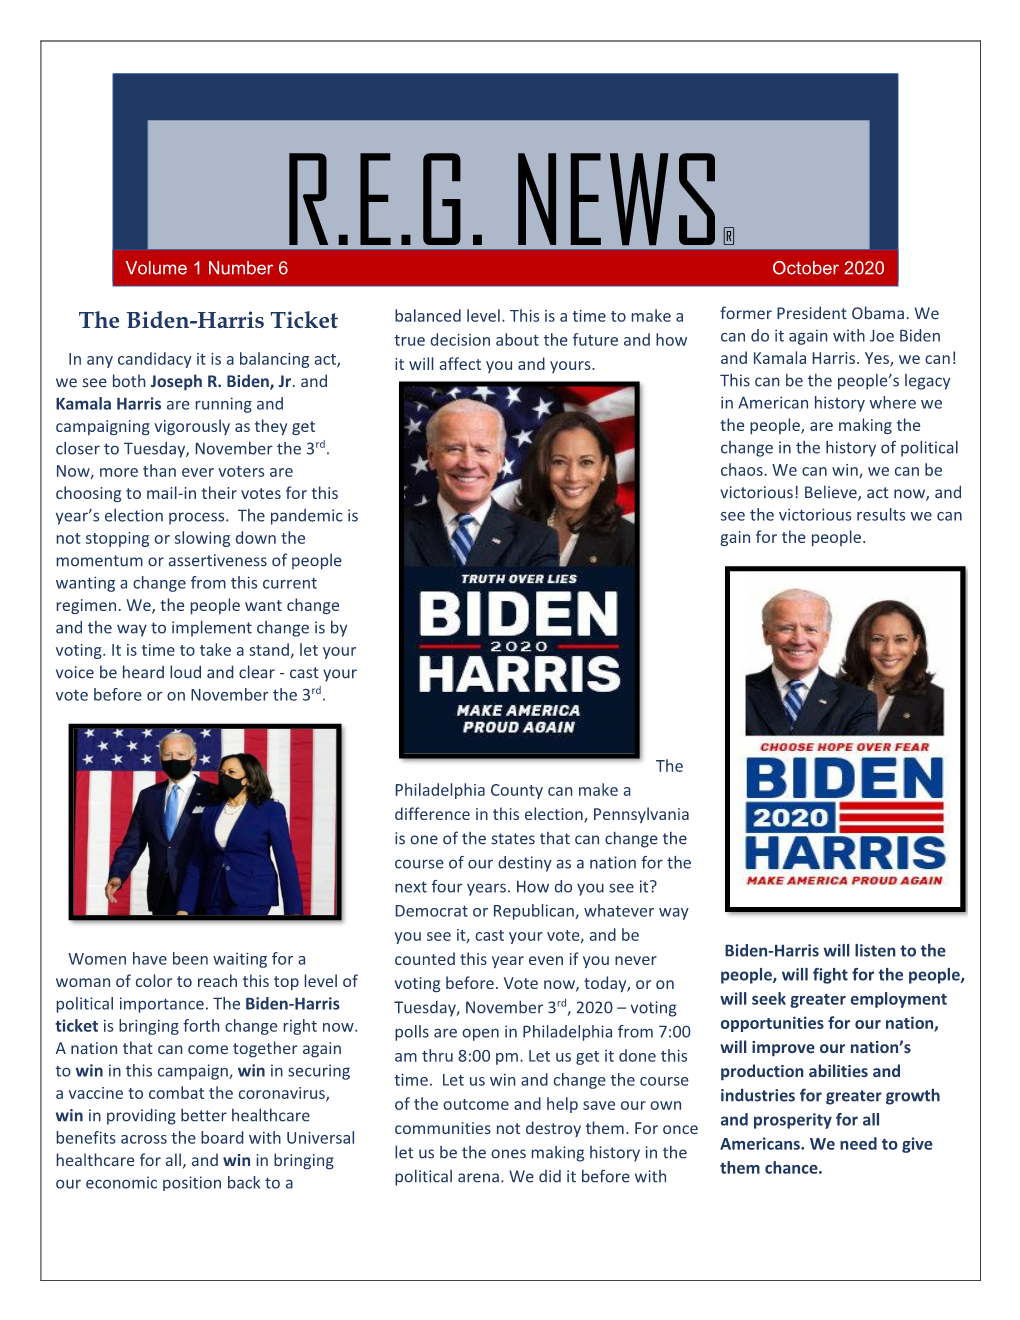 R.E.G. NEWS® Volume 1 Number 6 October 2020